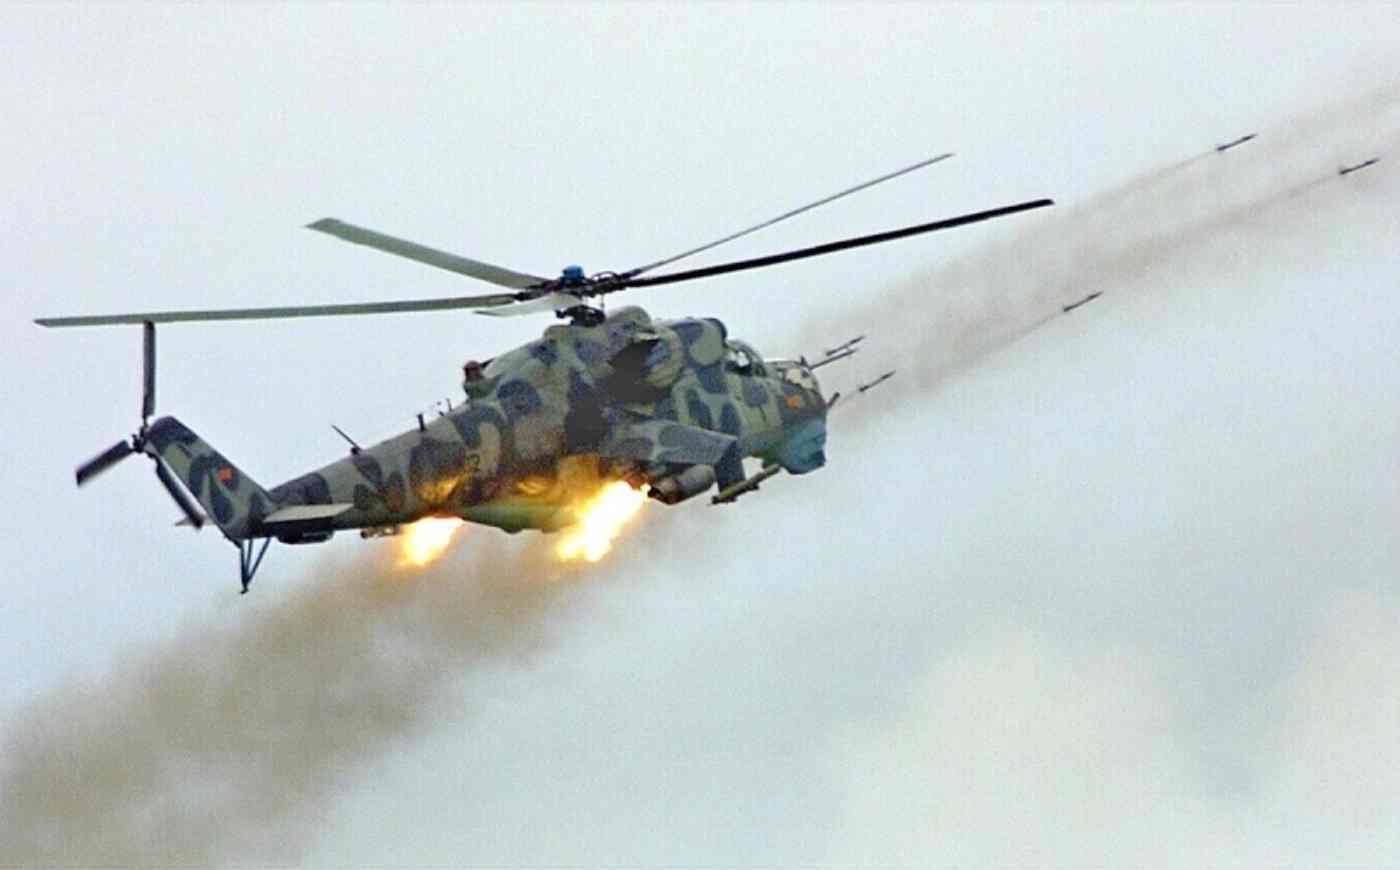 لماذا فشل الدفاع الجوي الروسي في اعتراض المروحية الأوكرانية Mi-24 "الدبابة الطائرة Flying Tank" التي نفذت هجوم بيلغورود؟